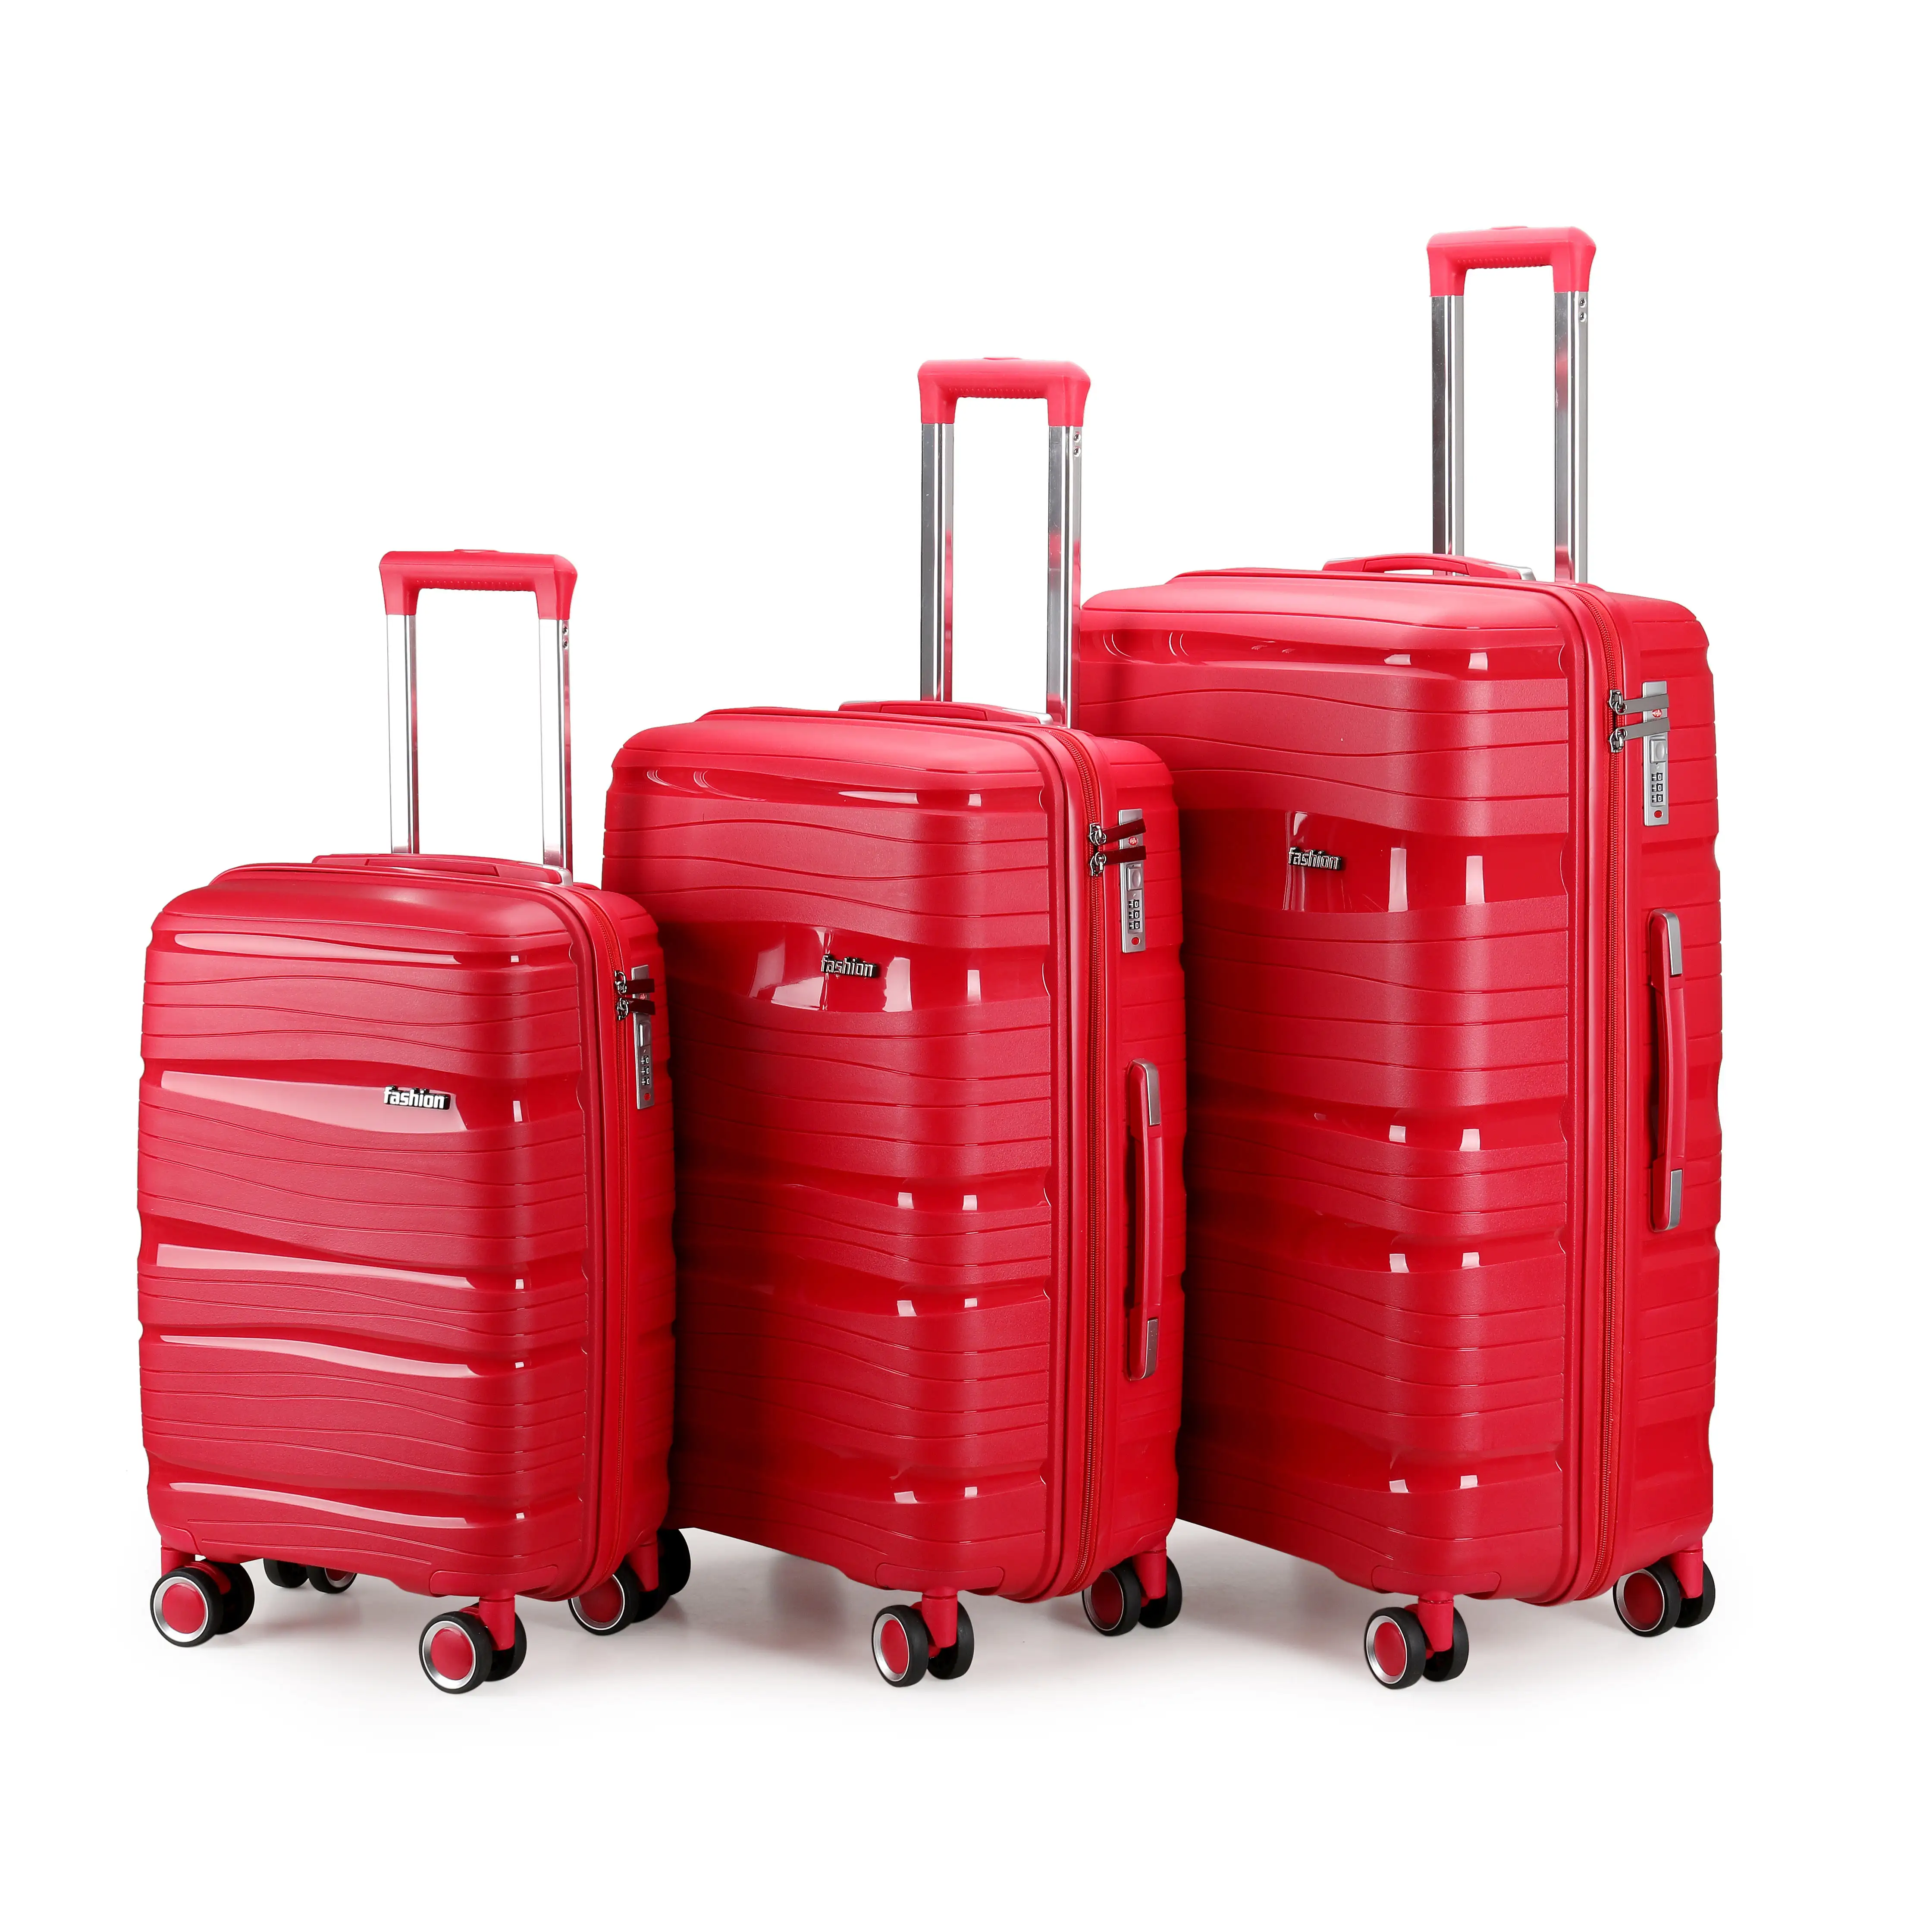 PP tolley case nouveauté sac poitrine haute qualité bagages matériau dur vintage bagages voyage affaires sac